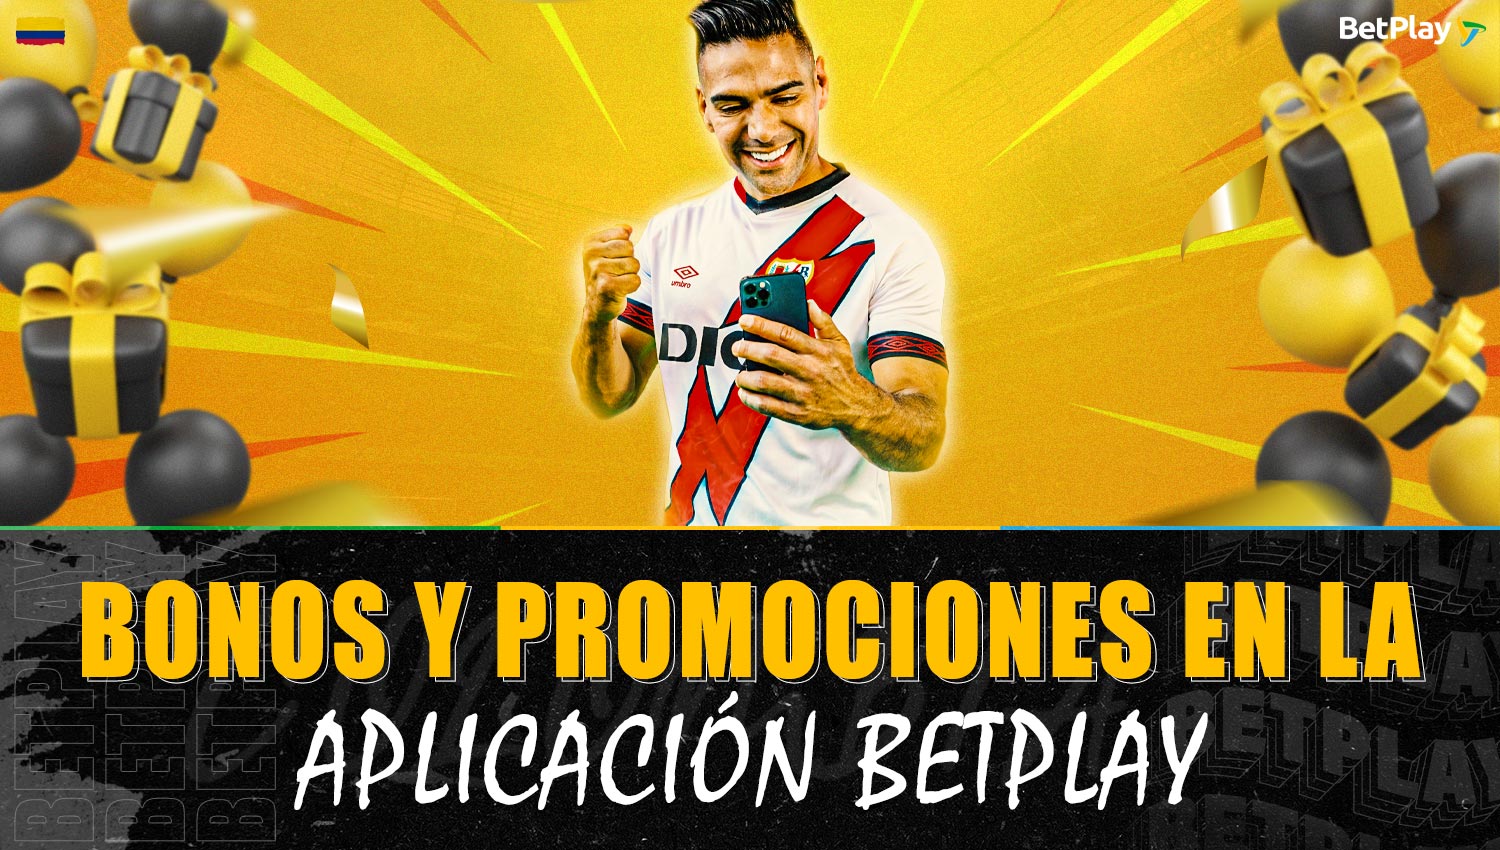 Información detallada sobre bonos y promociones en la aplicación móvil de Betplay Colombia